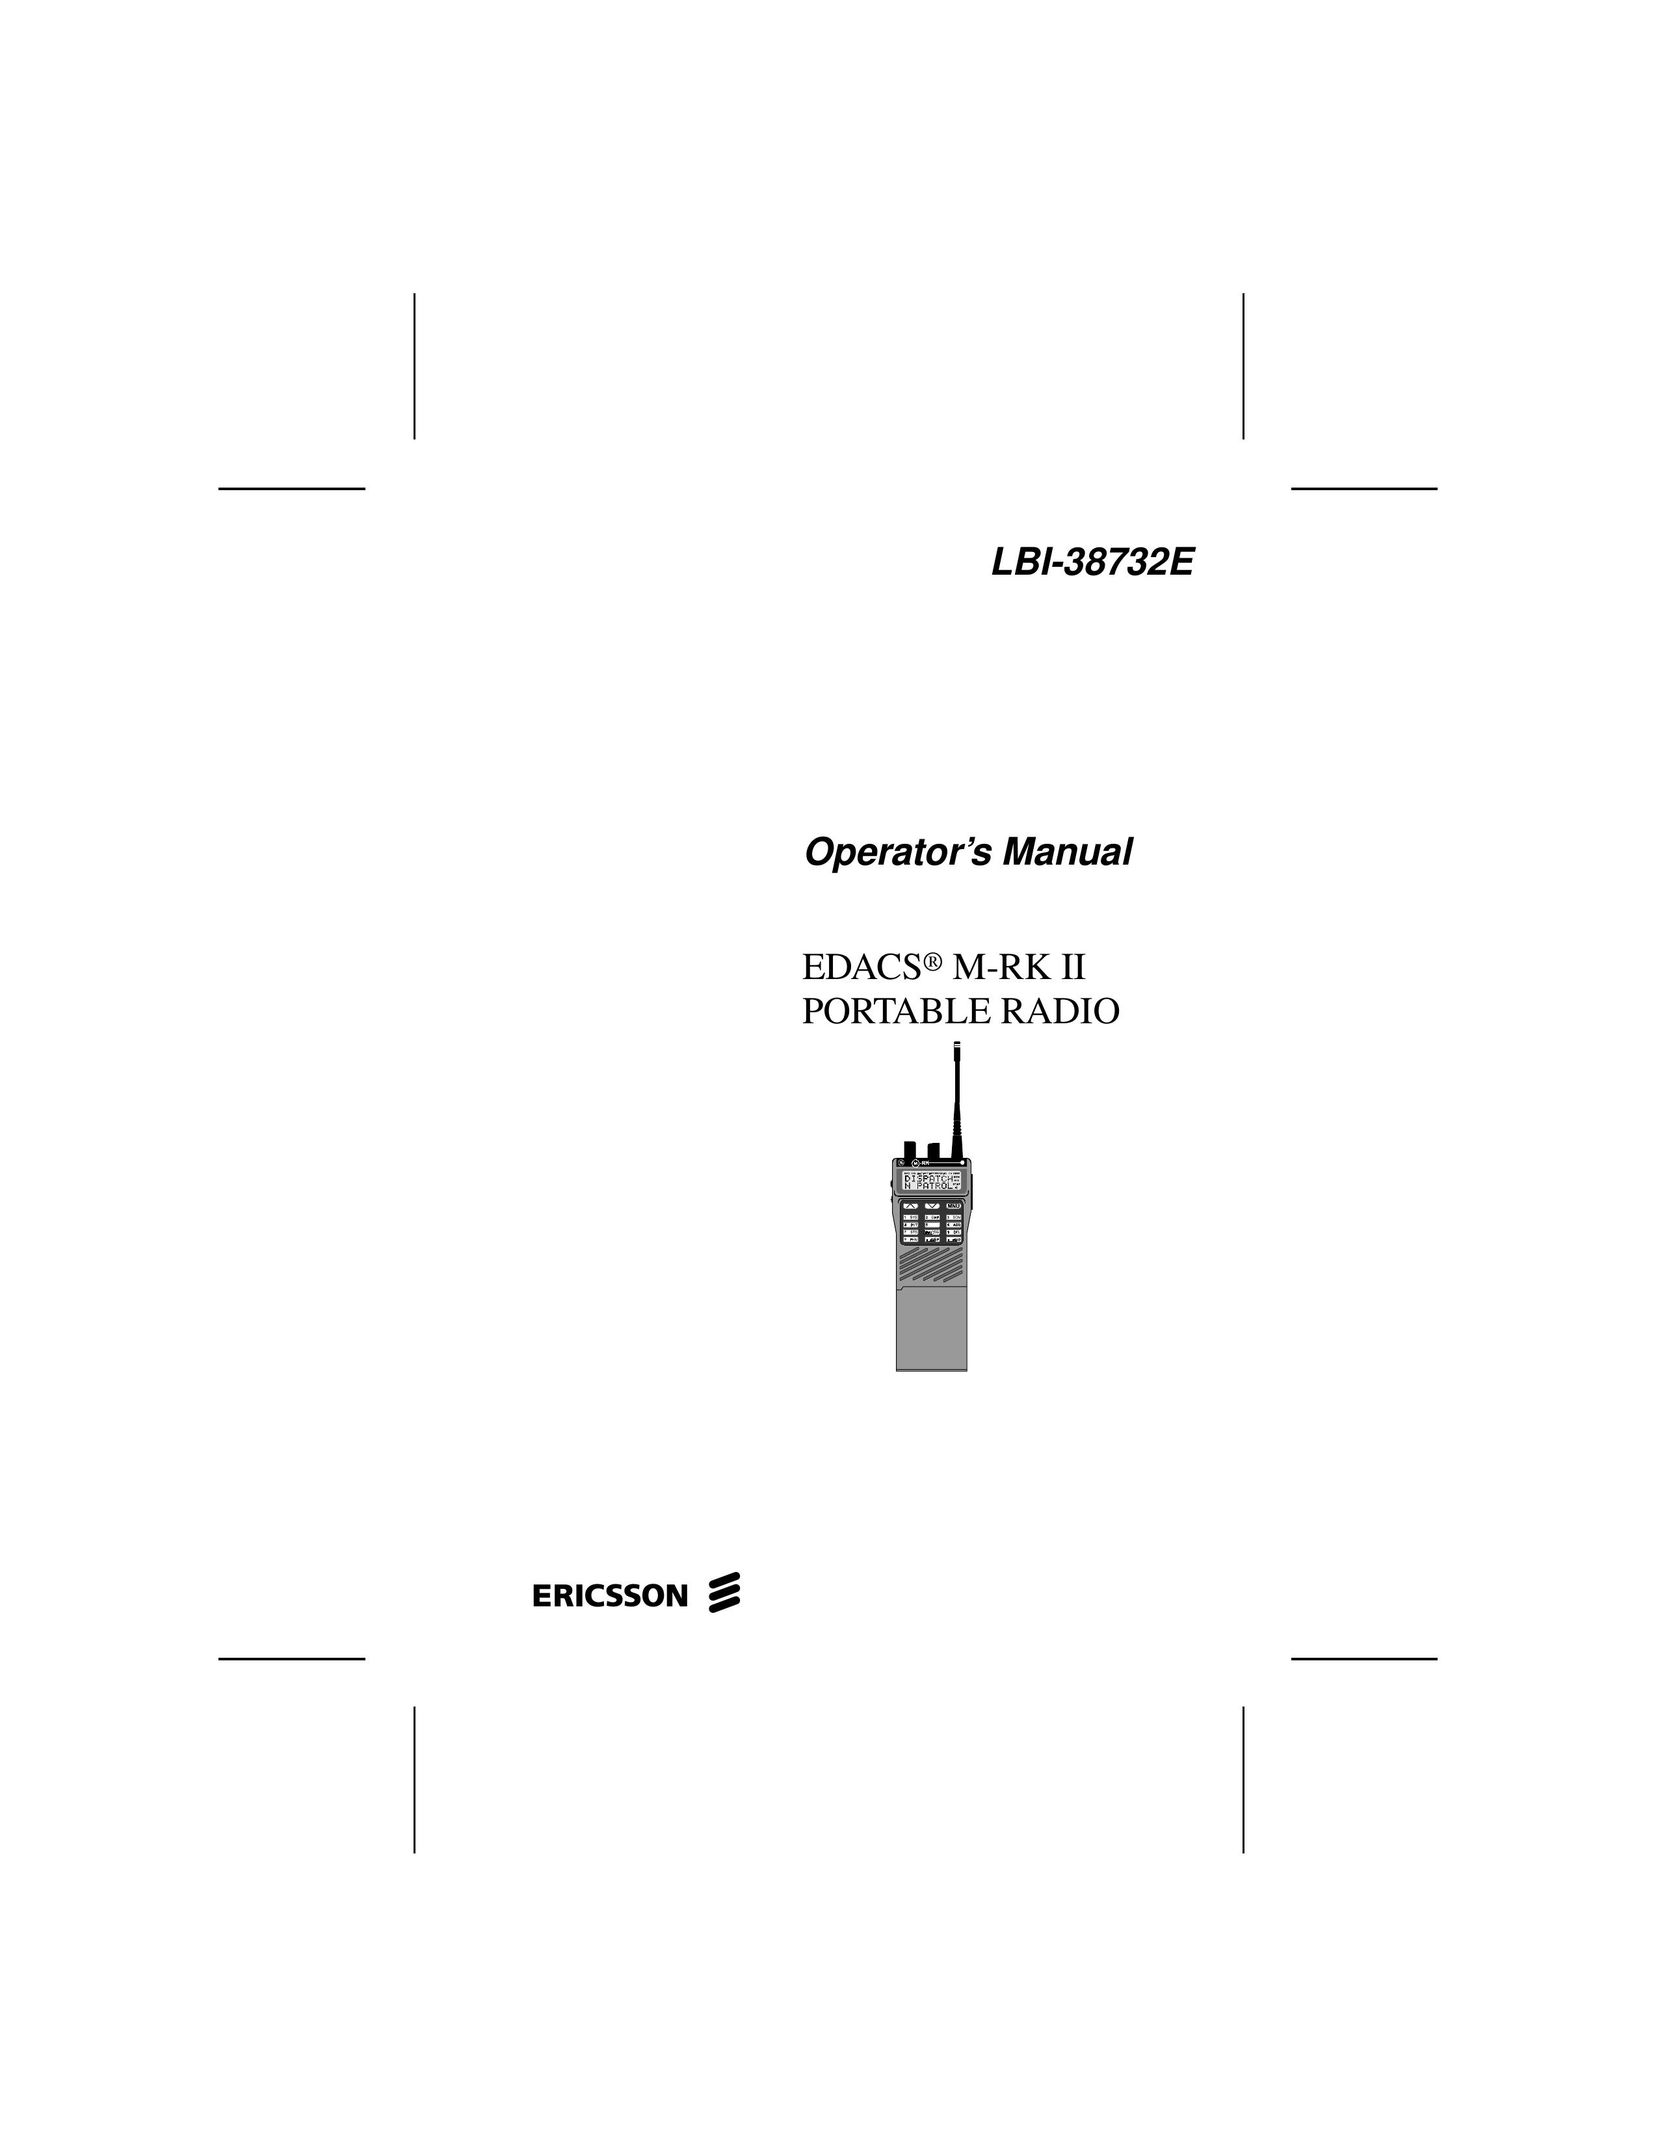 Ericsson LBI-38732E Portable Radio User Manual